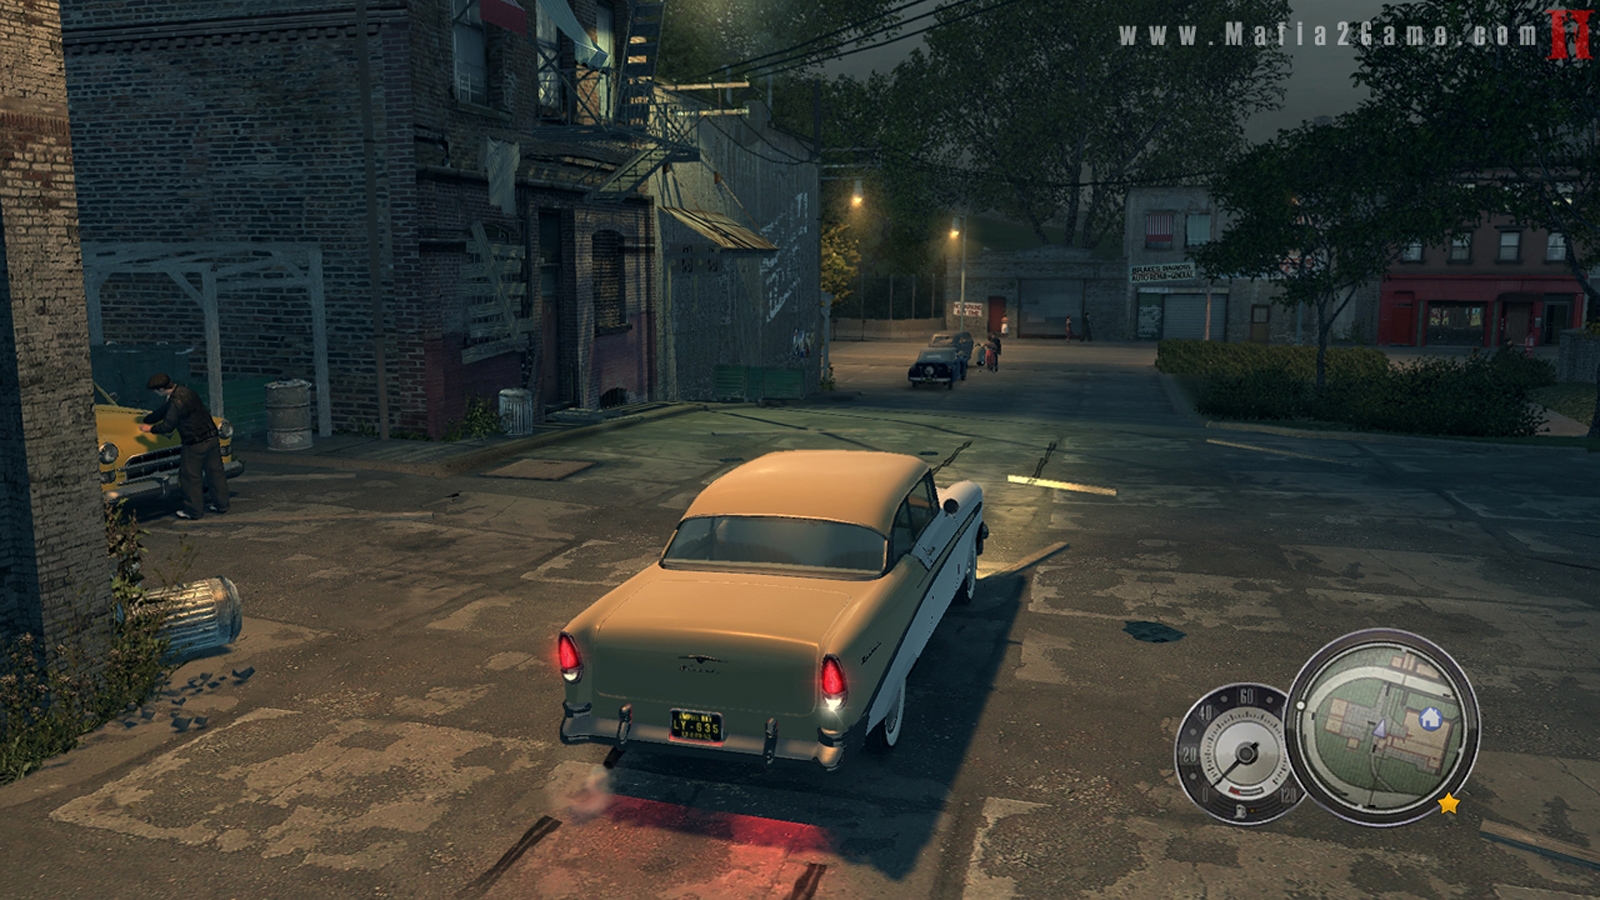 Скриншот из игры Mafia 2 под номером 37